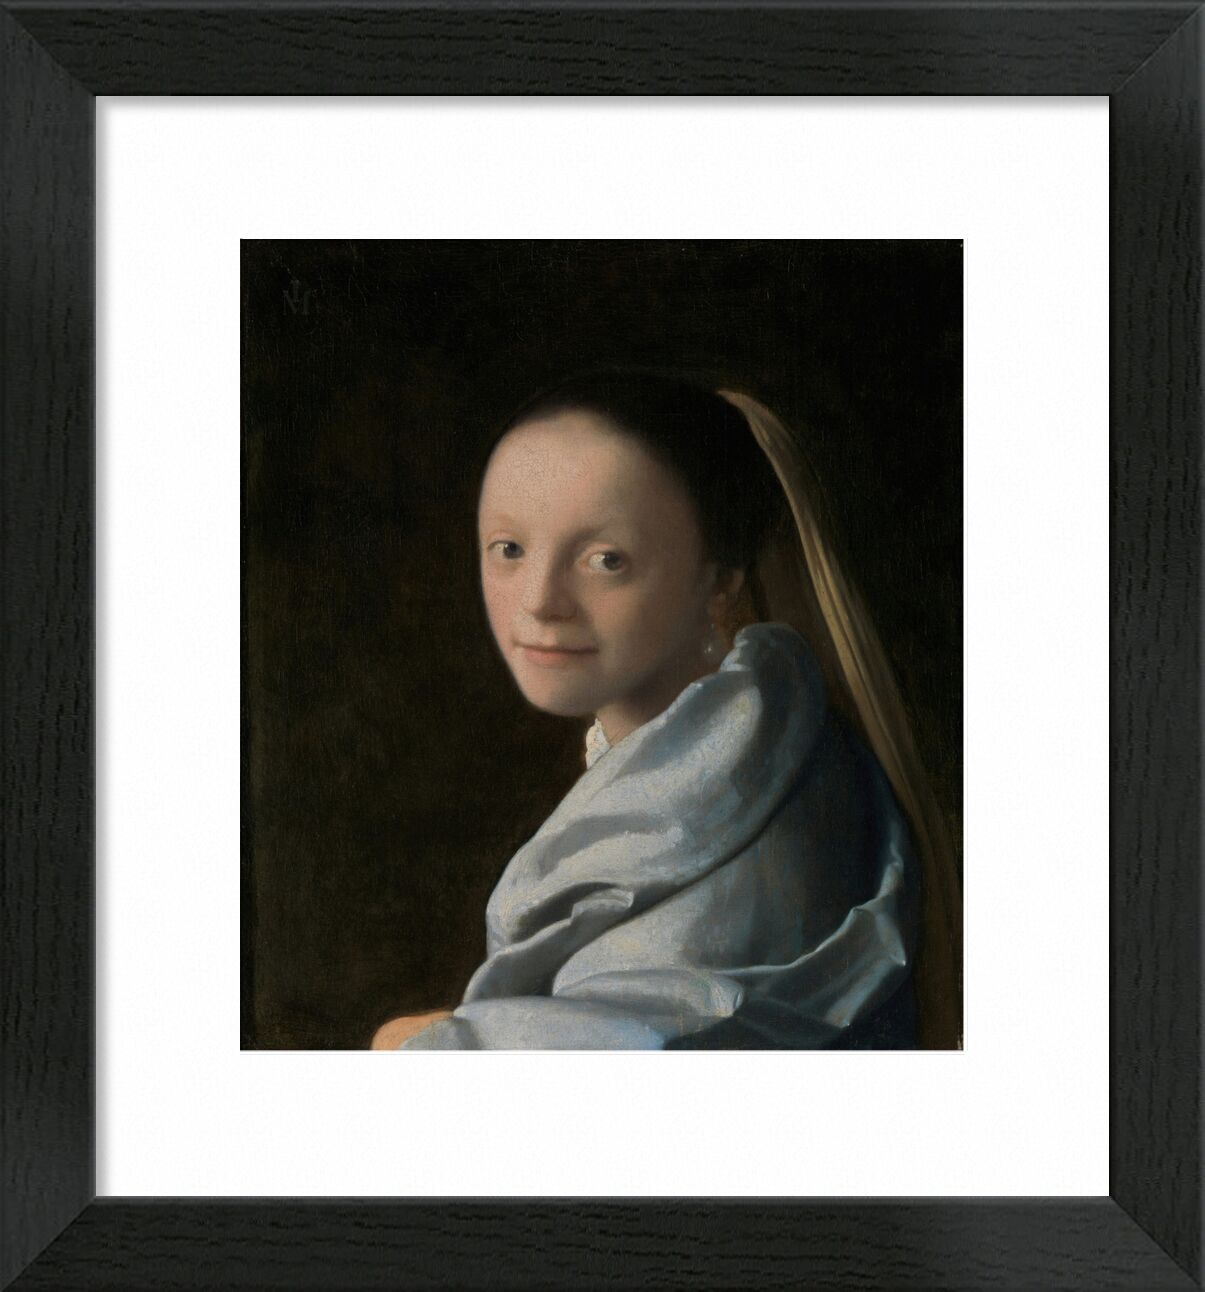 Studie einer Jungen Frau - Vermeer von Bildende Kunst, Prodi Art, Lächeln, Porträt, junge Frau, Johannes Vermeer, Vermeer